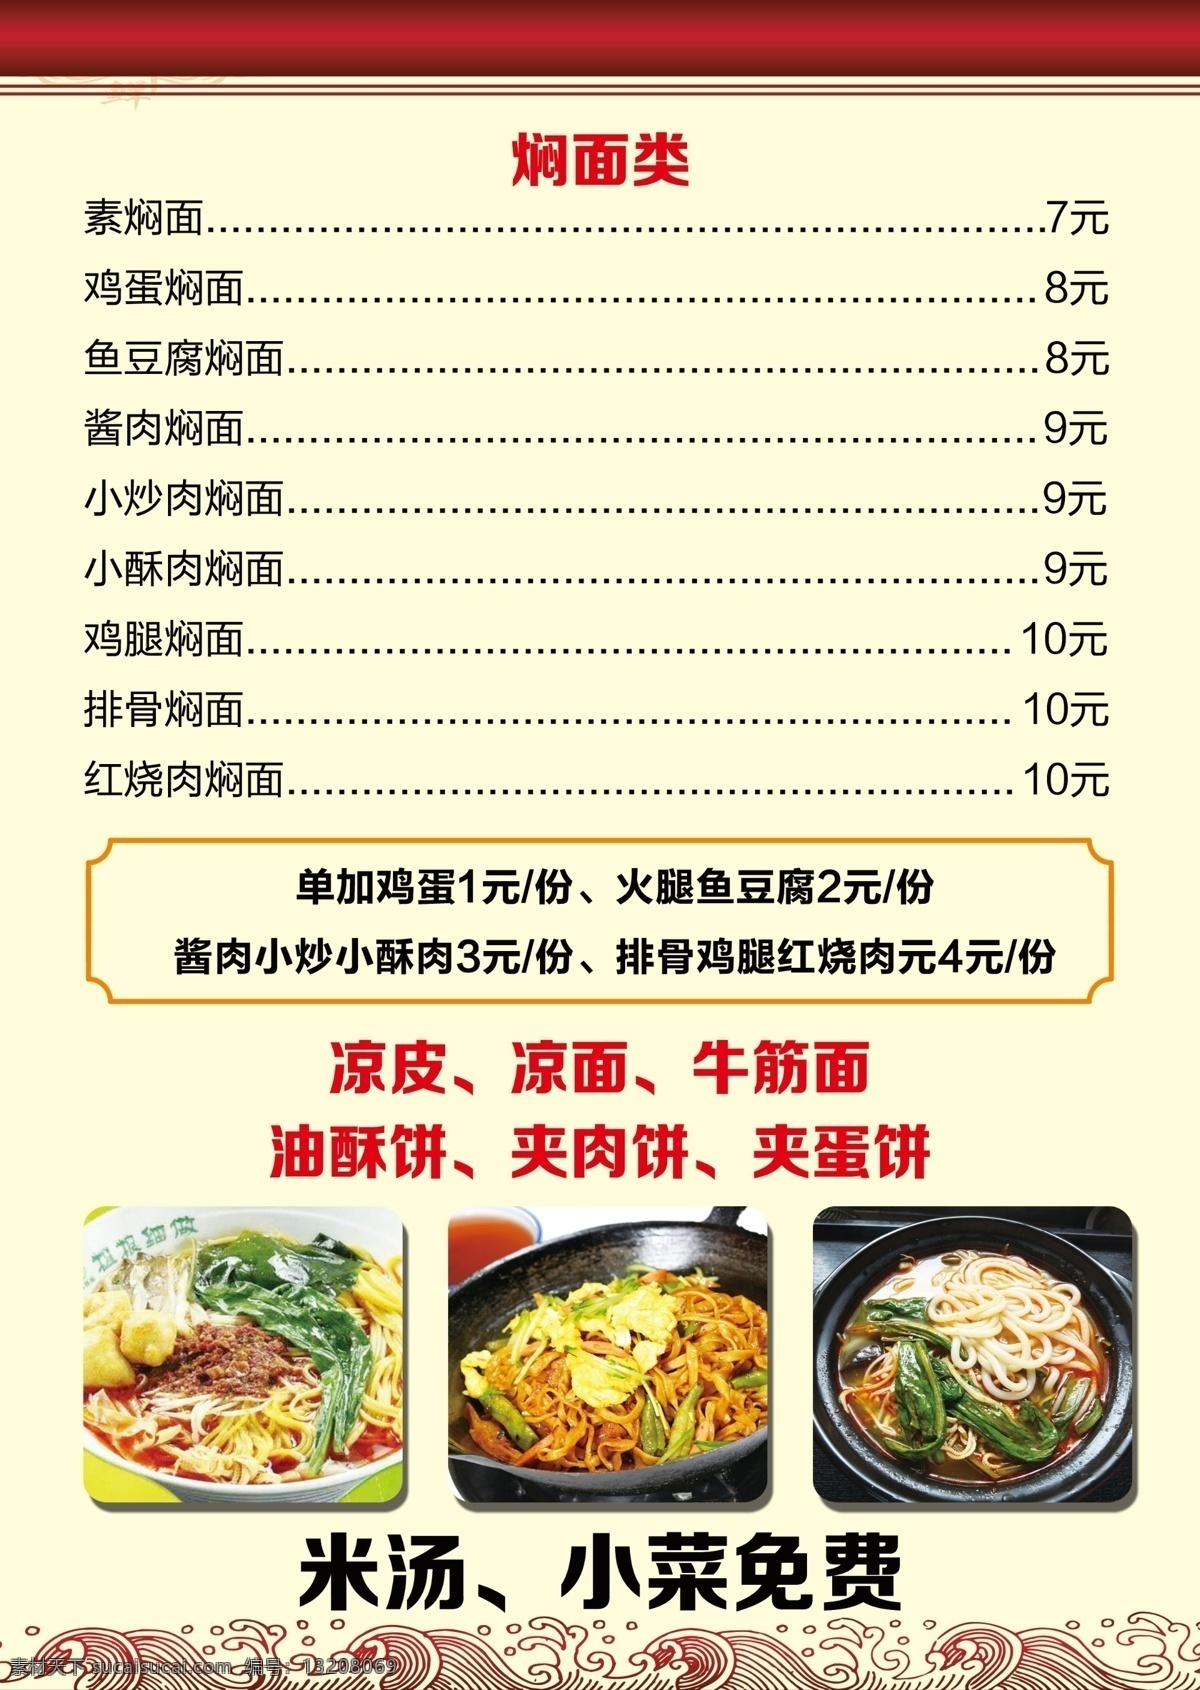 菜谱图片 菜谱 中国风 菜单 淡雅背景 边框 分层